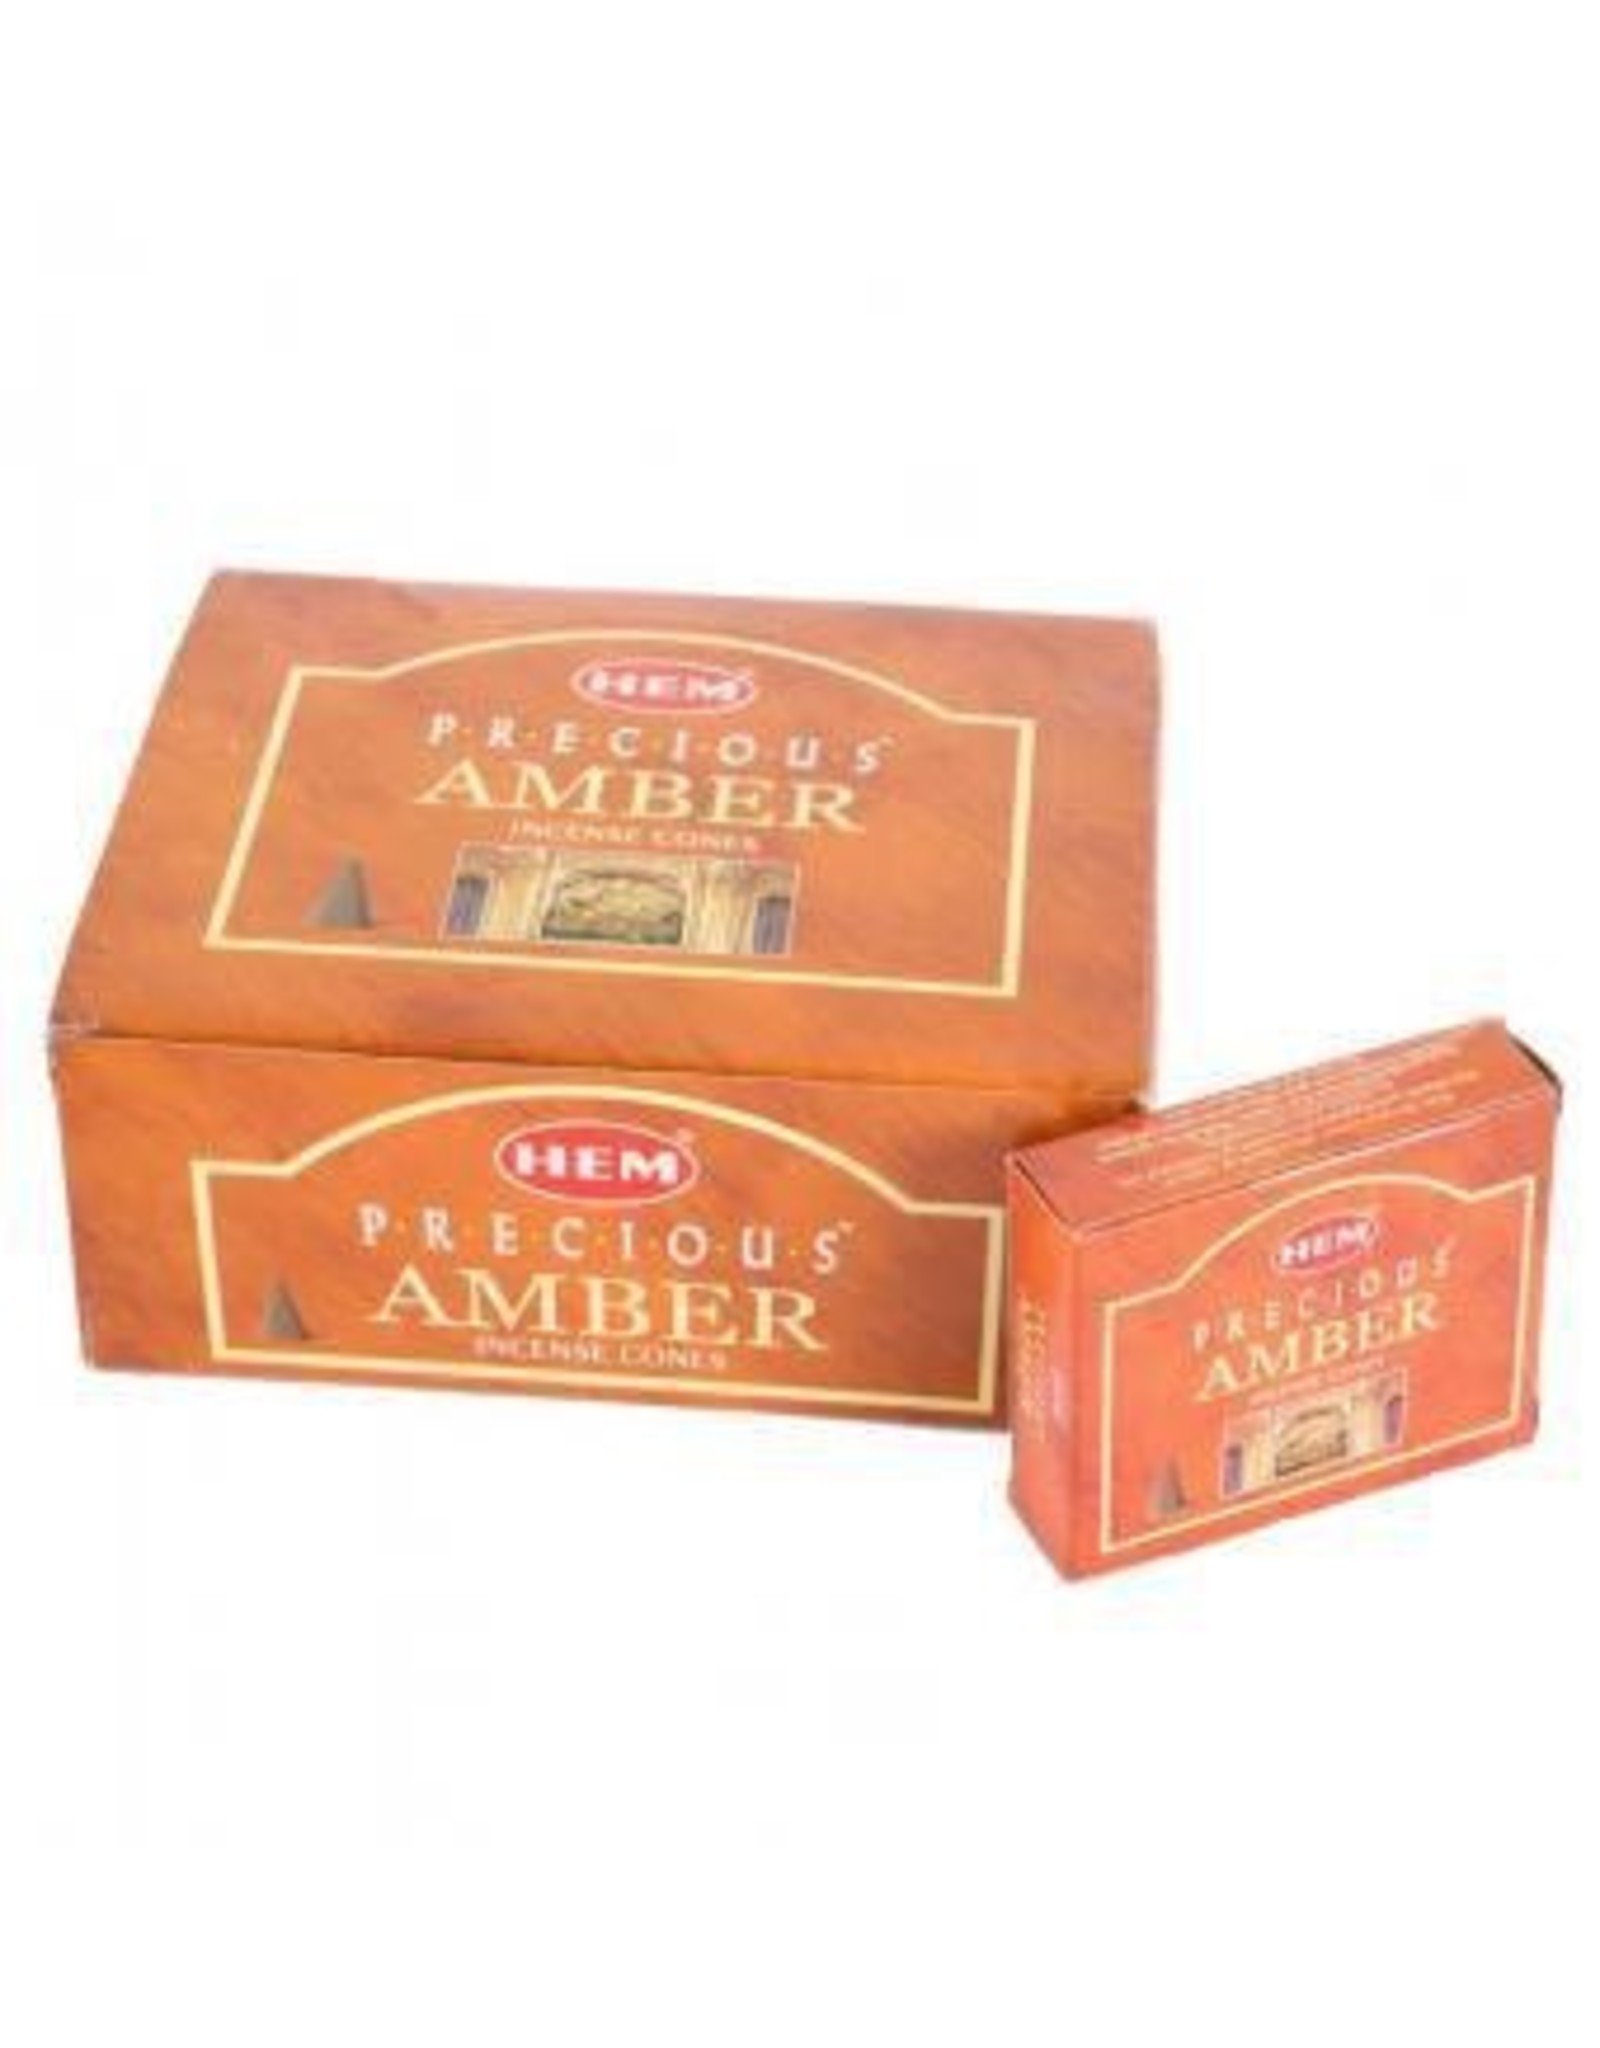 HEM Precious Amber Incense Cones